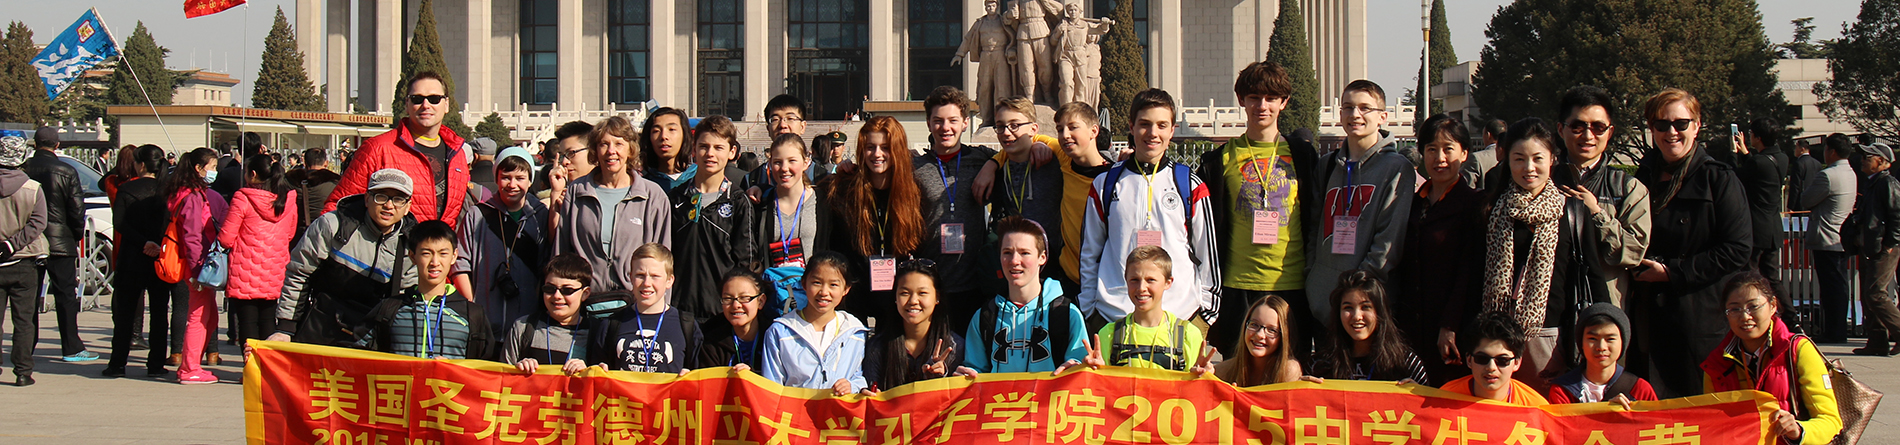 Voyage en Chine des élèves de 8e année, 2015